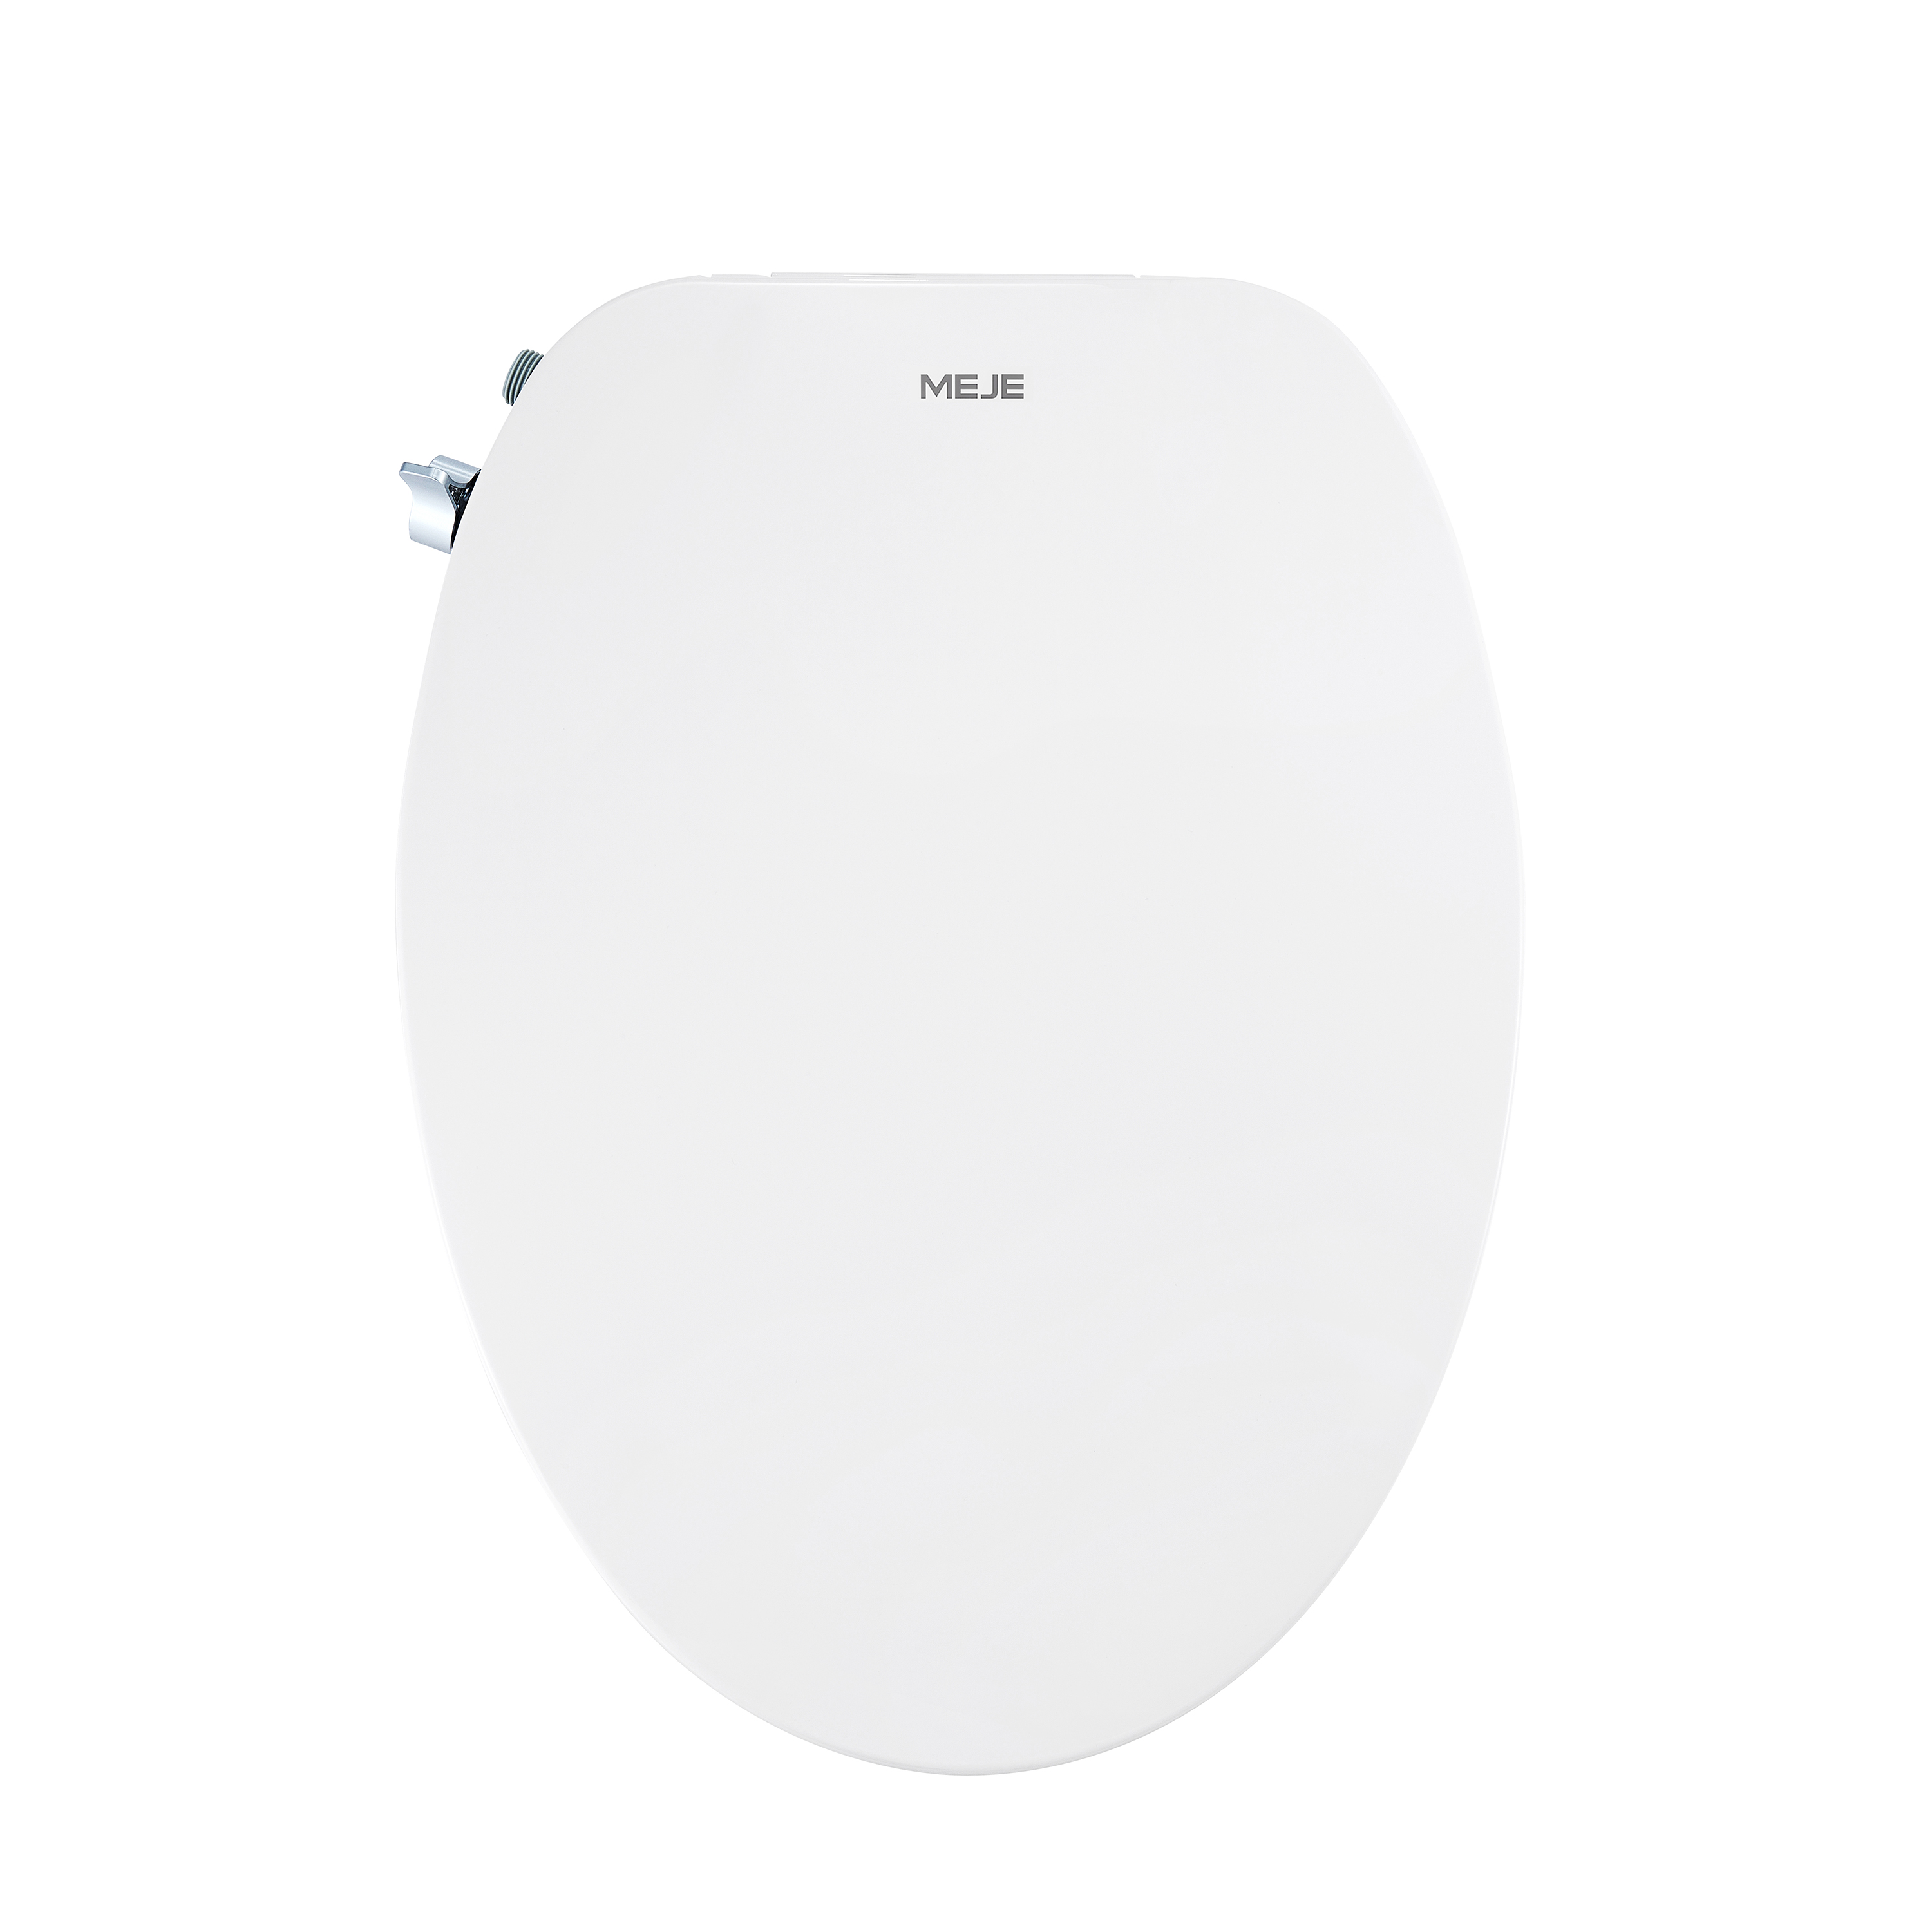 MEJE #VB-L Abattant WC non électrique pour bidet, convient aux toilettes allongées, blanc – Double buse avec pulvérisateurs réglables, installation facile…